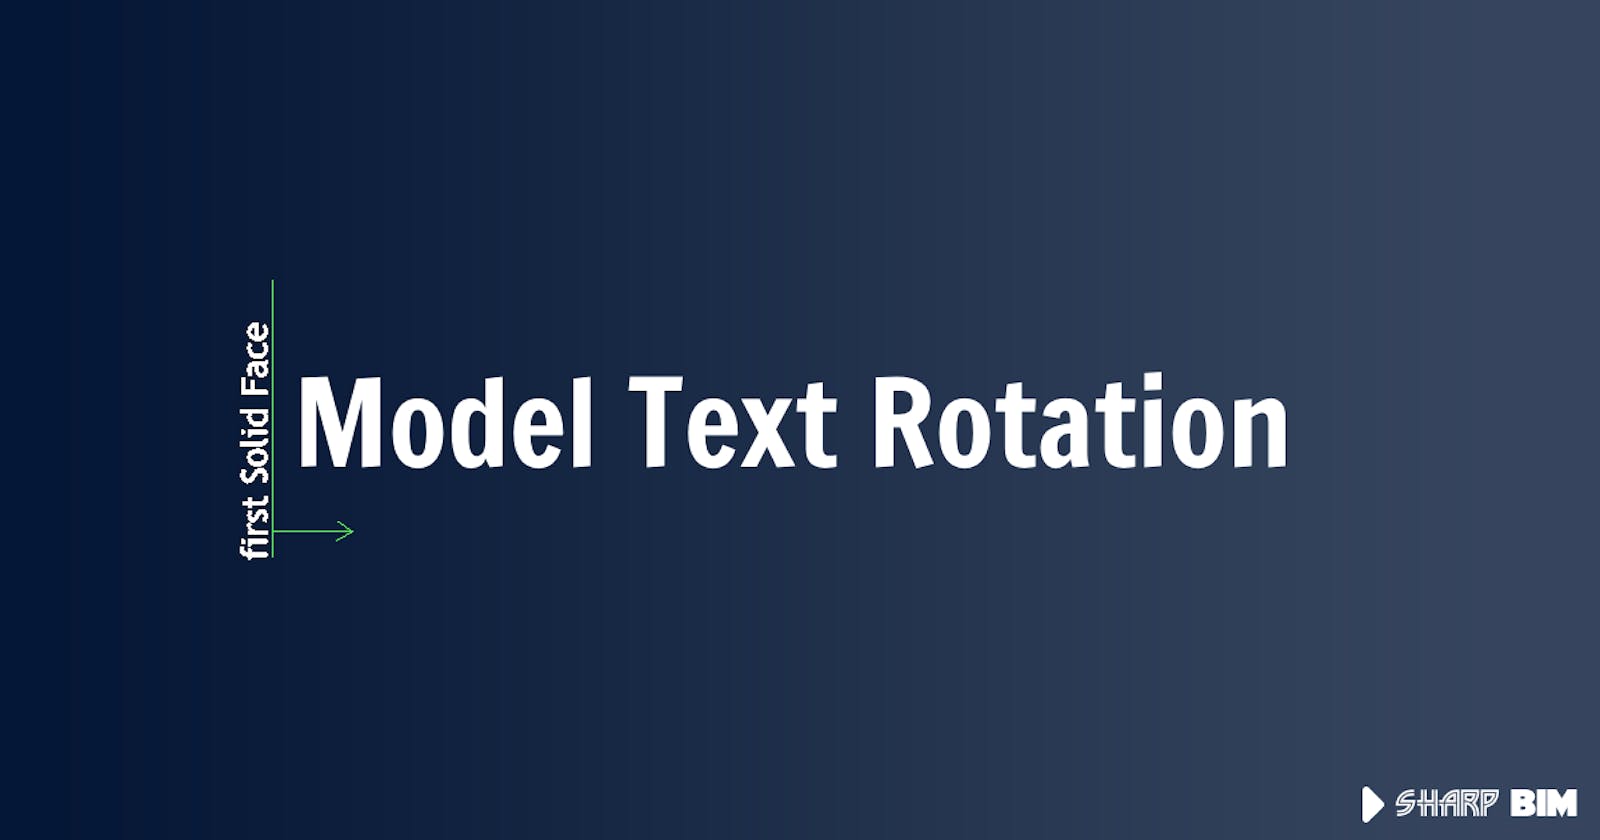 ModelText Rotation